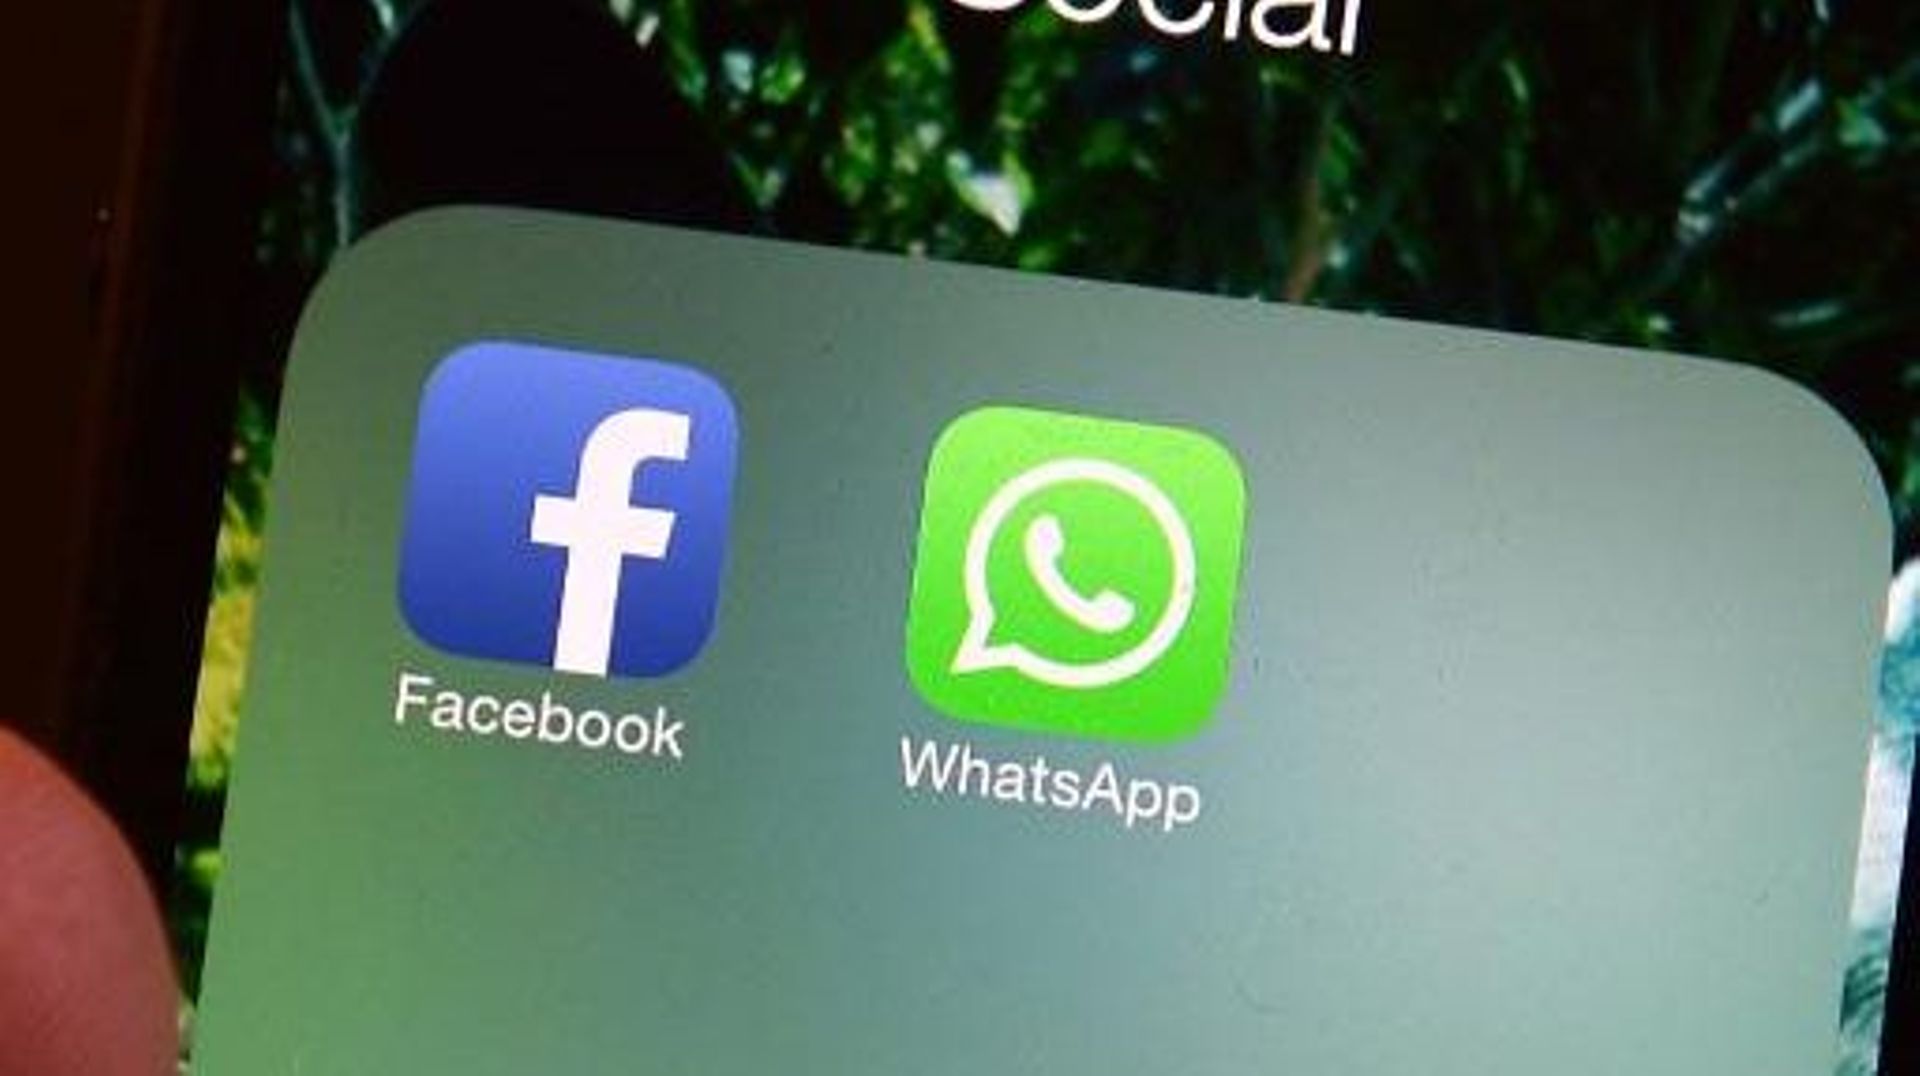 Les logos de Facebook et WhatsApp sur un smartphone, le 20 février 2014 à Rome